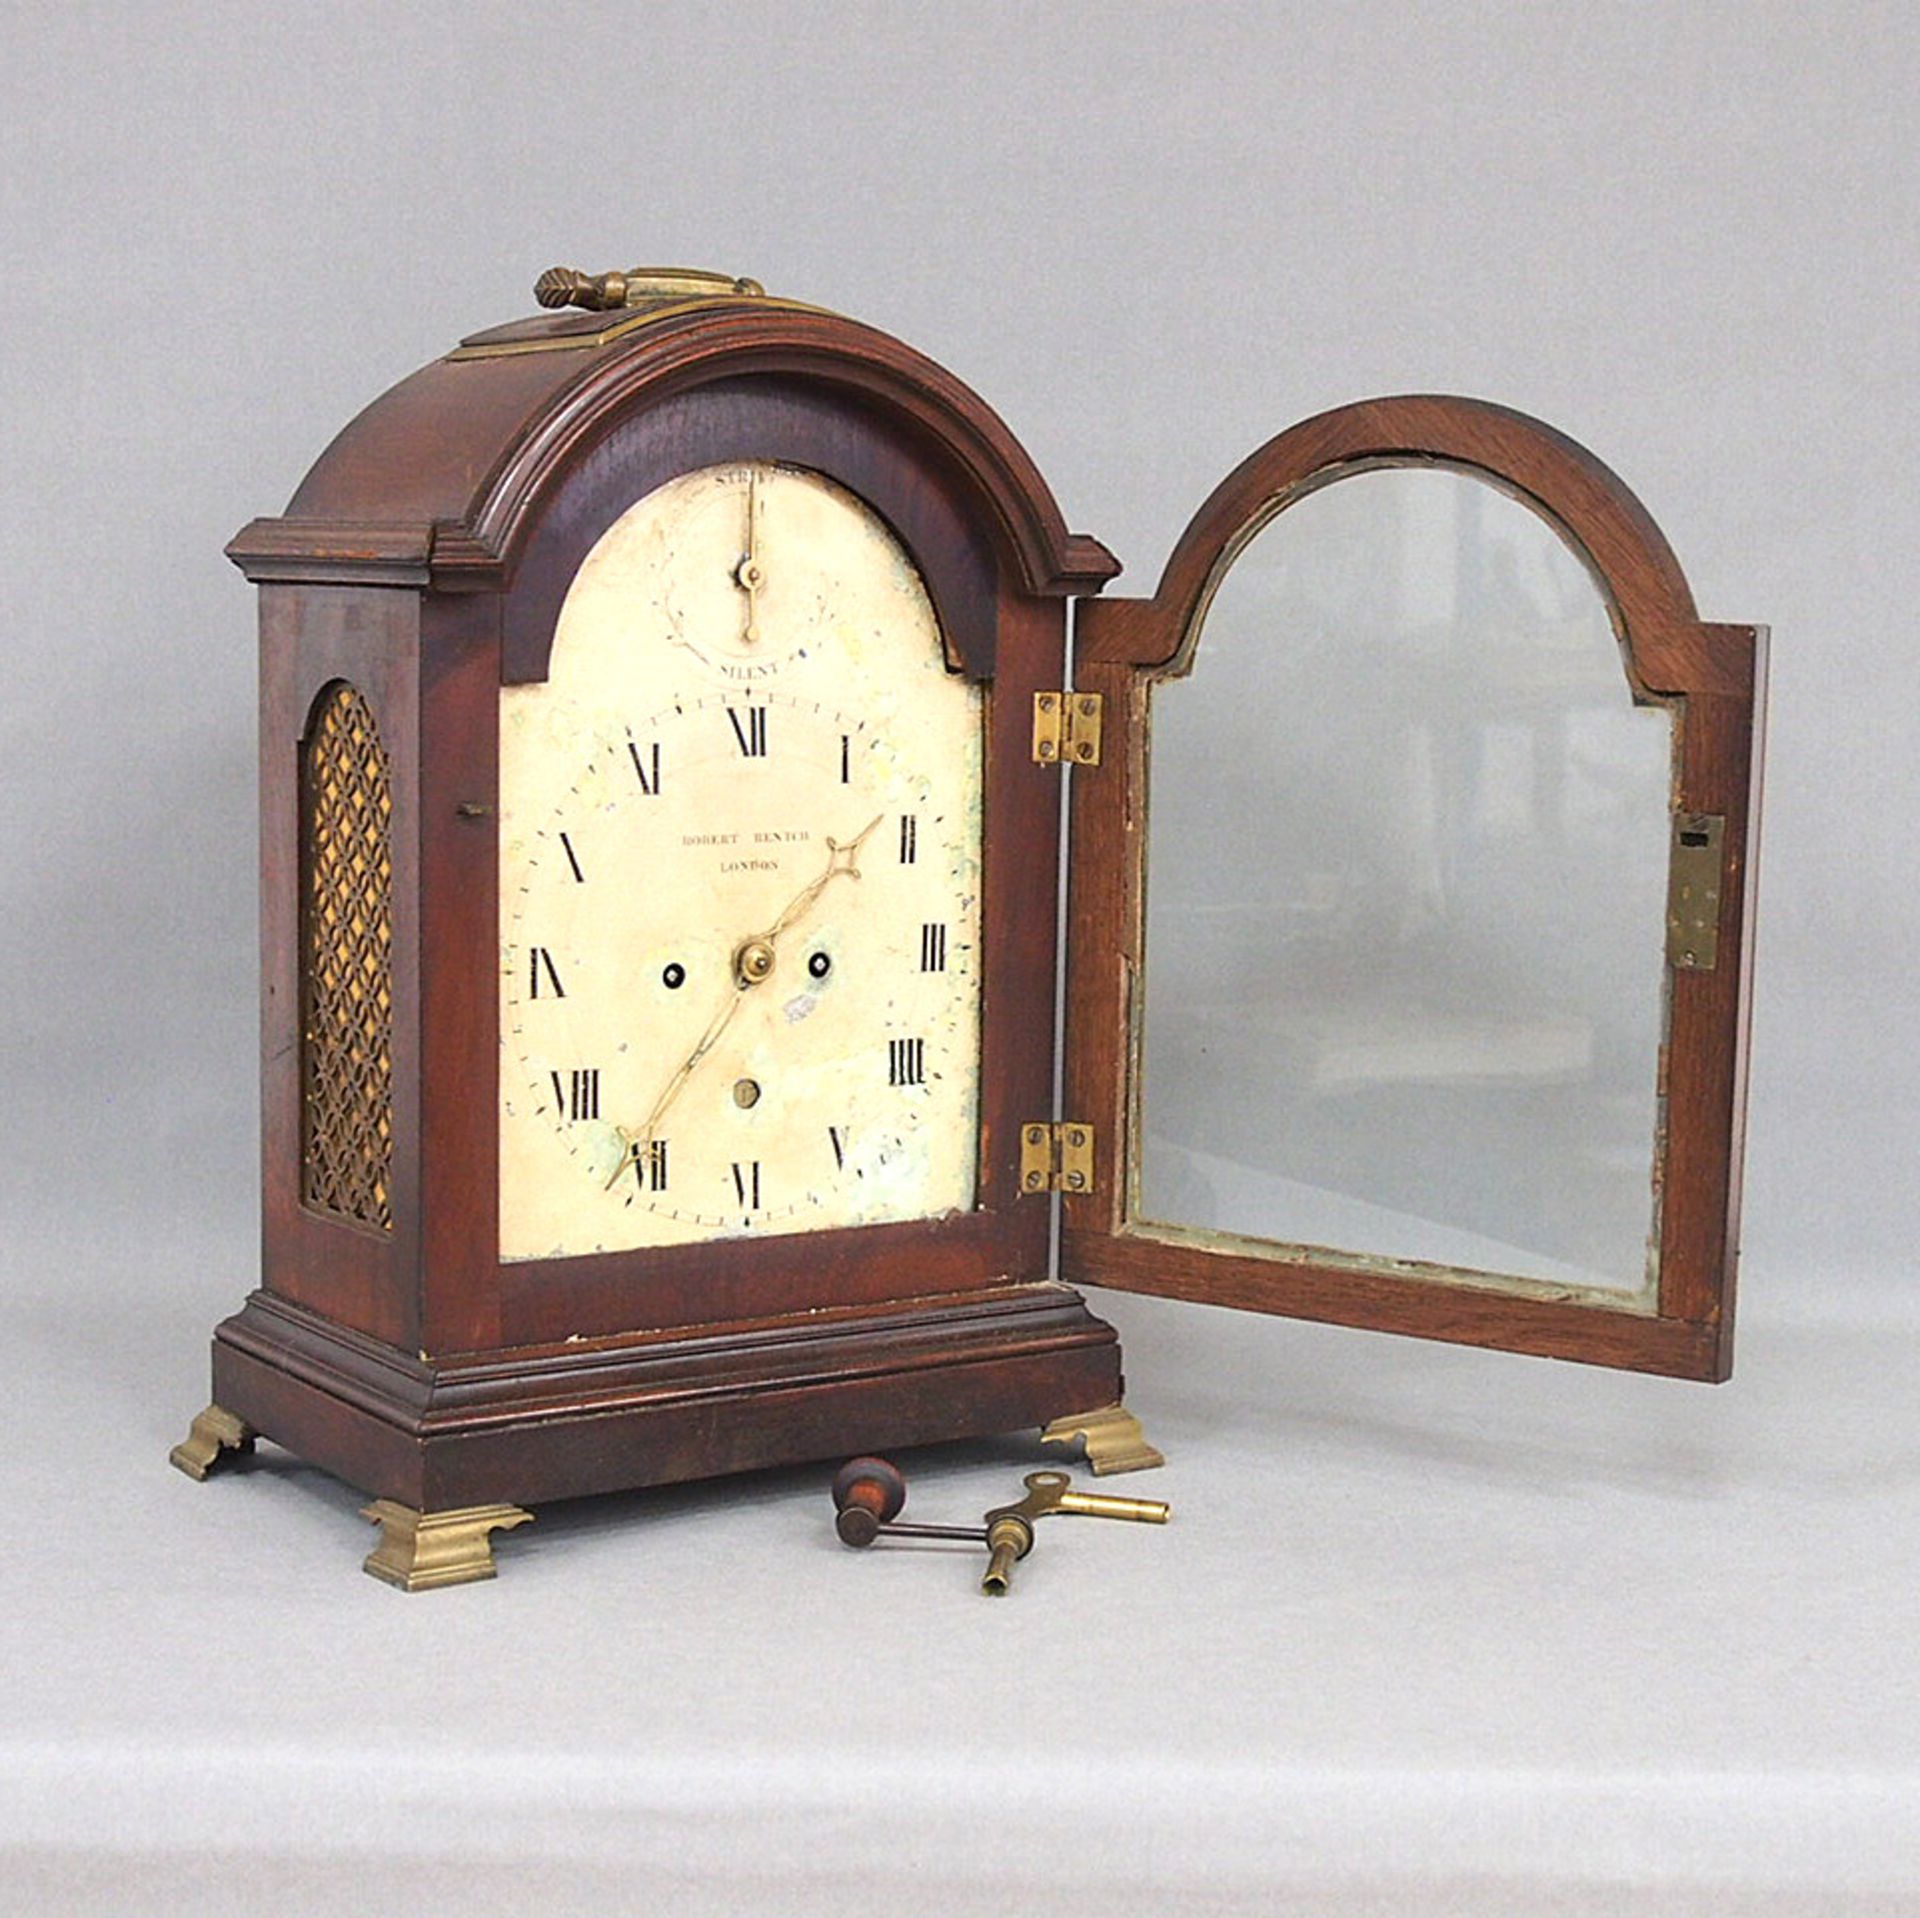 Tischuhr (Bracket Clock)